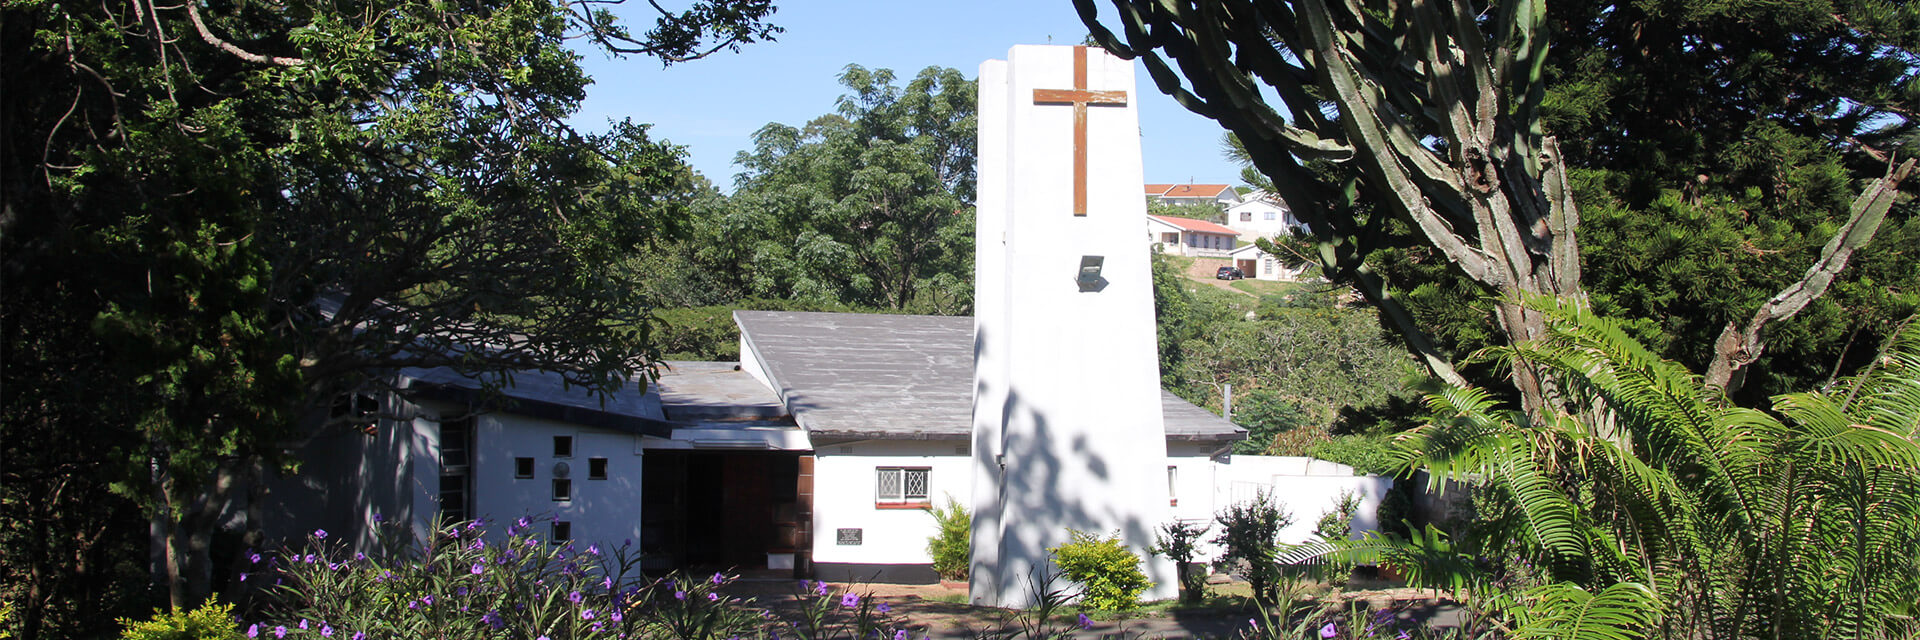 evangelisch-lutherischen Kirche von St. John's Durban